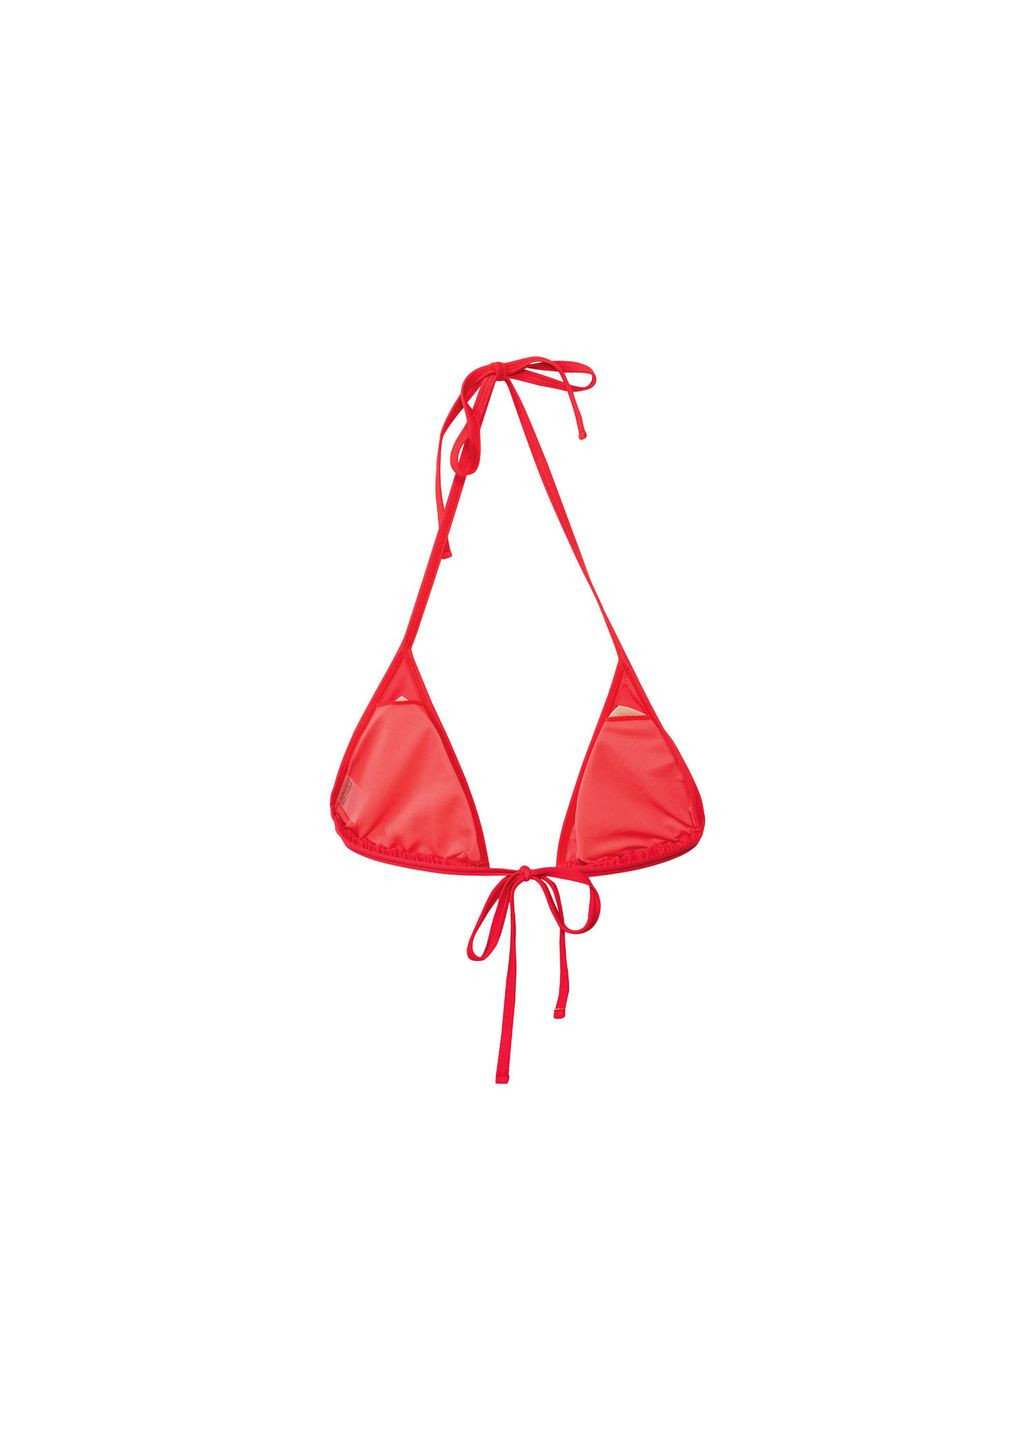 Красный купальник раздельный на завязках для женщины 371920 34(xs) Esmara С открытой спиной, С открытыми плечами